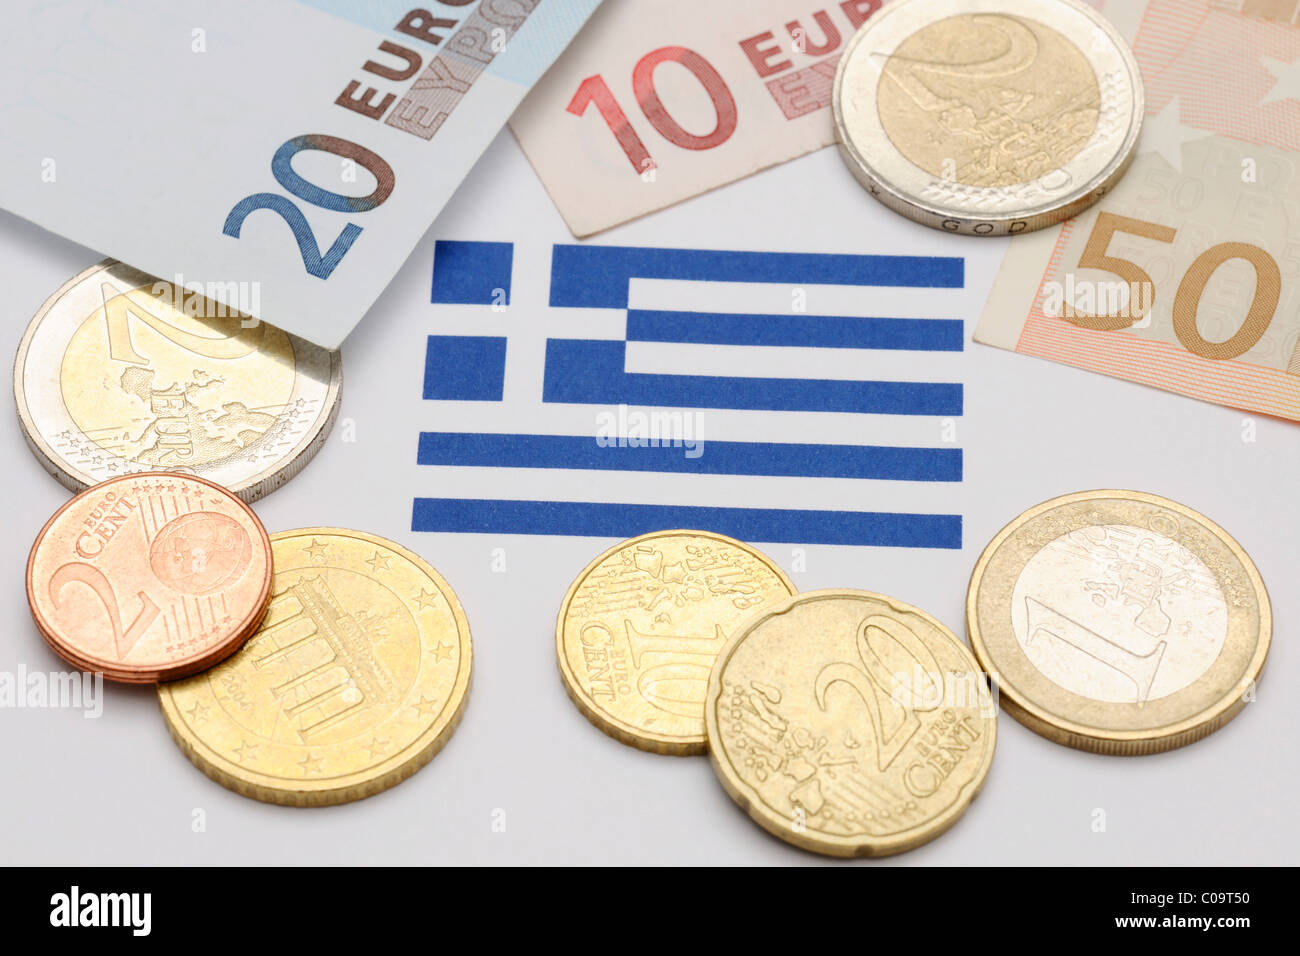 Immagine simbolica, crisi finanziaria della Grecia Foto Stock